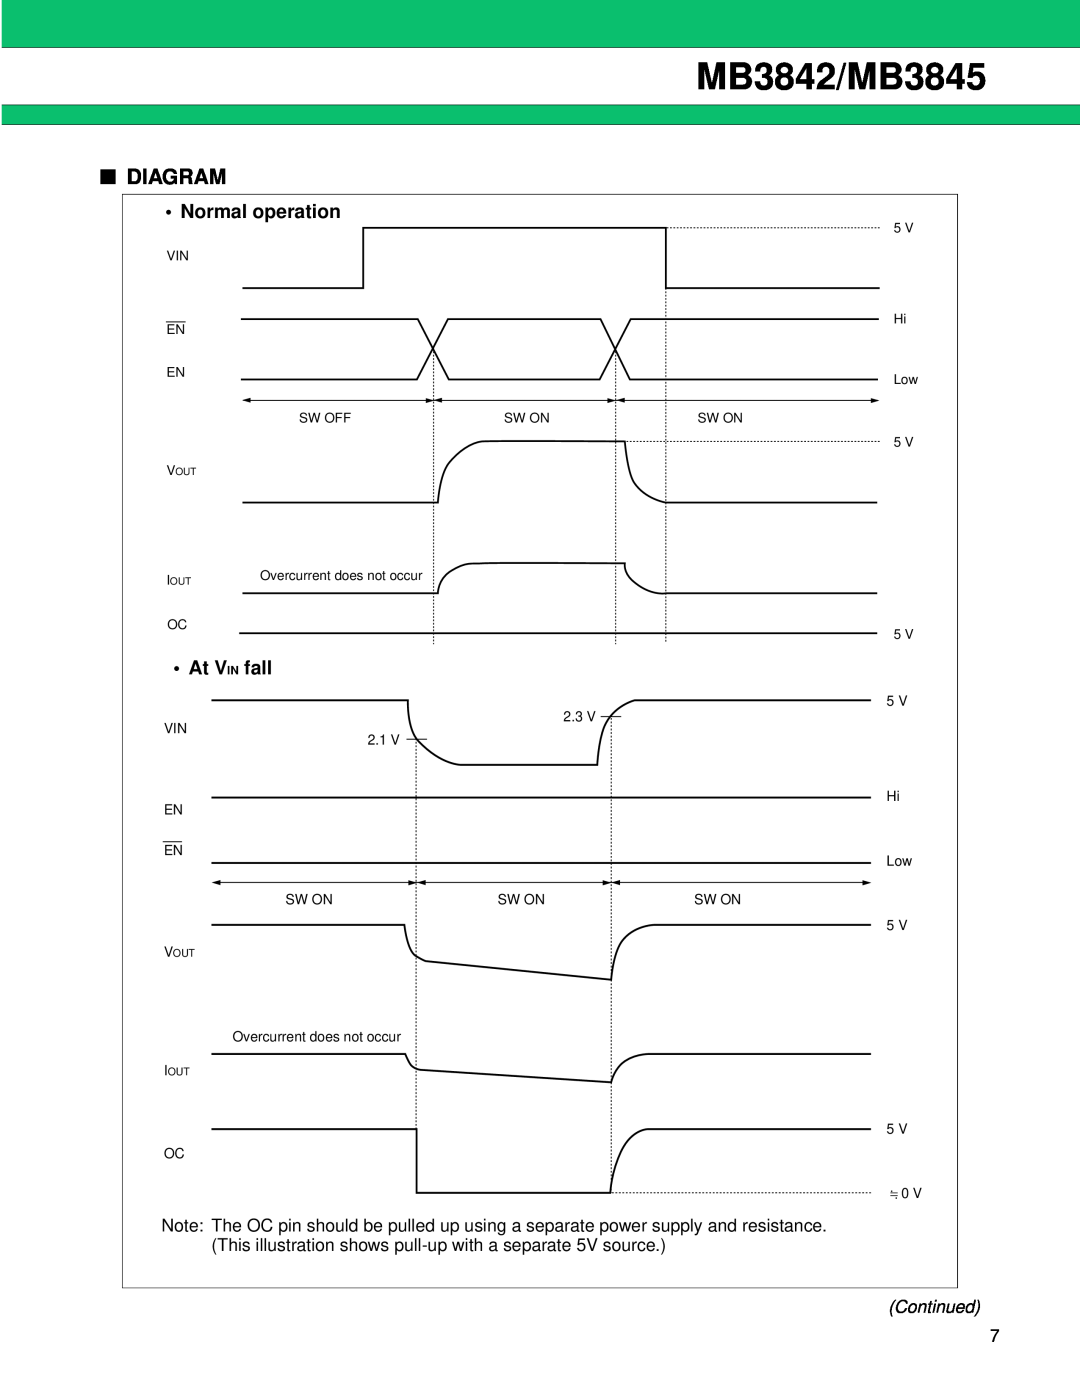 Fujitsu manual Diagram, Normal operation, At V IN fall, Continued, MB3842/MB3845 